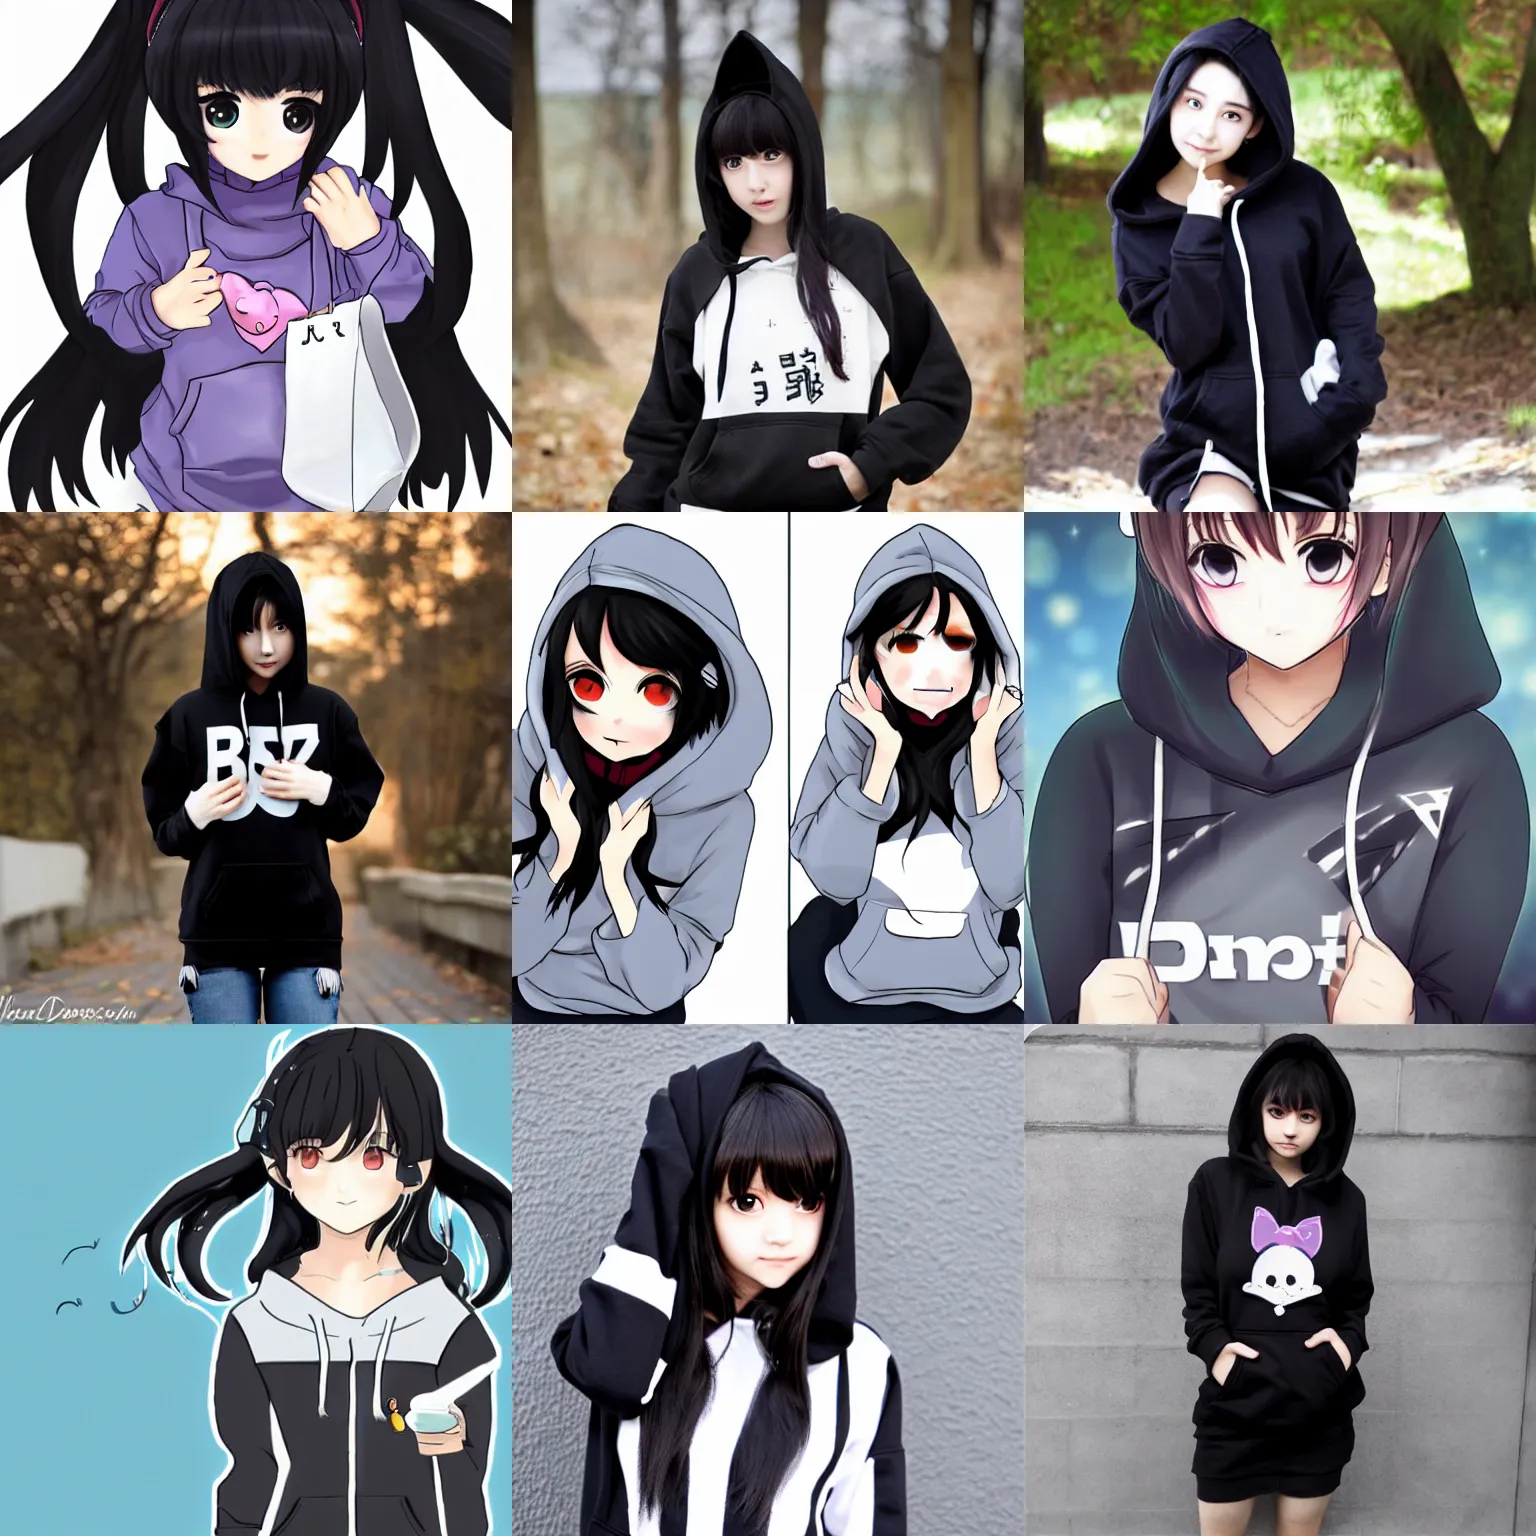 Prompt: black haired cute girl wearing hoodie danbooru